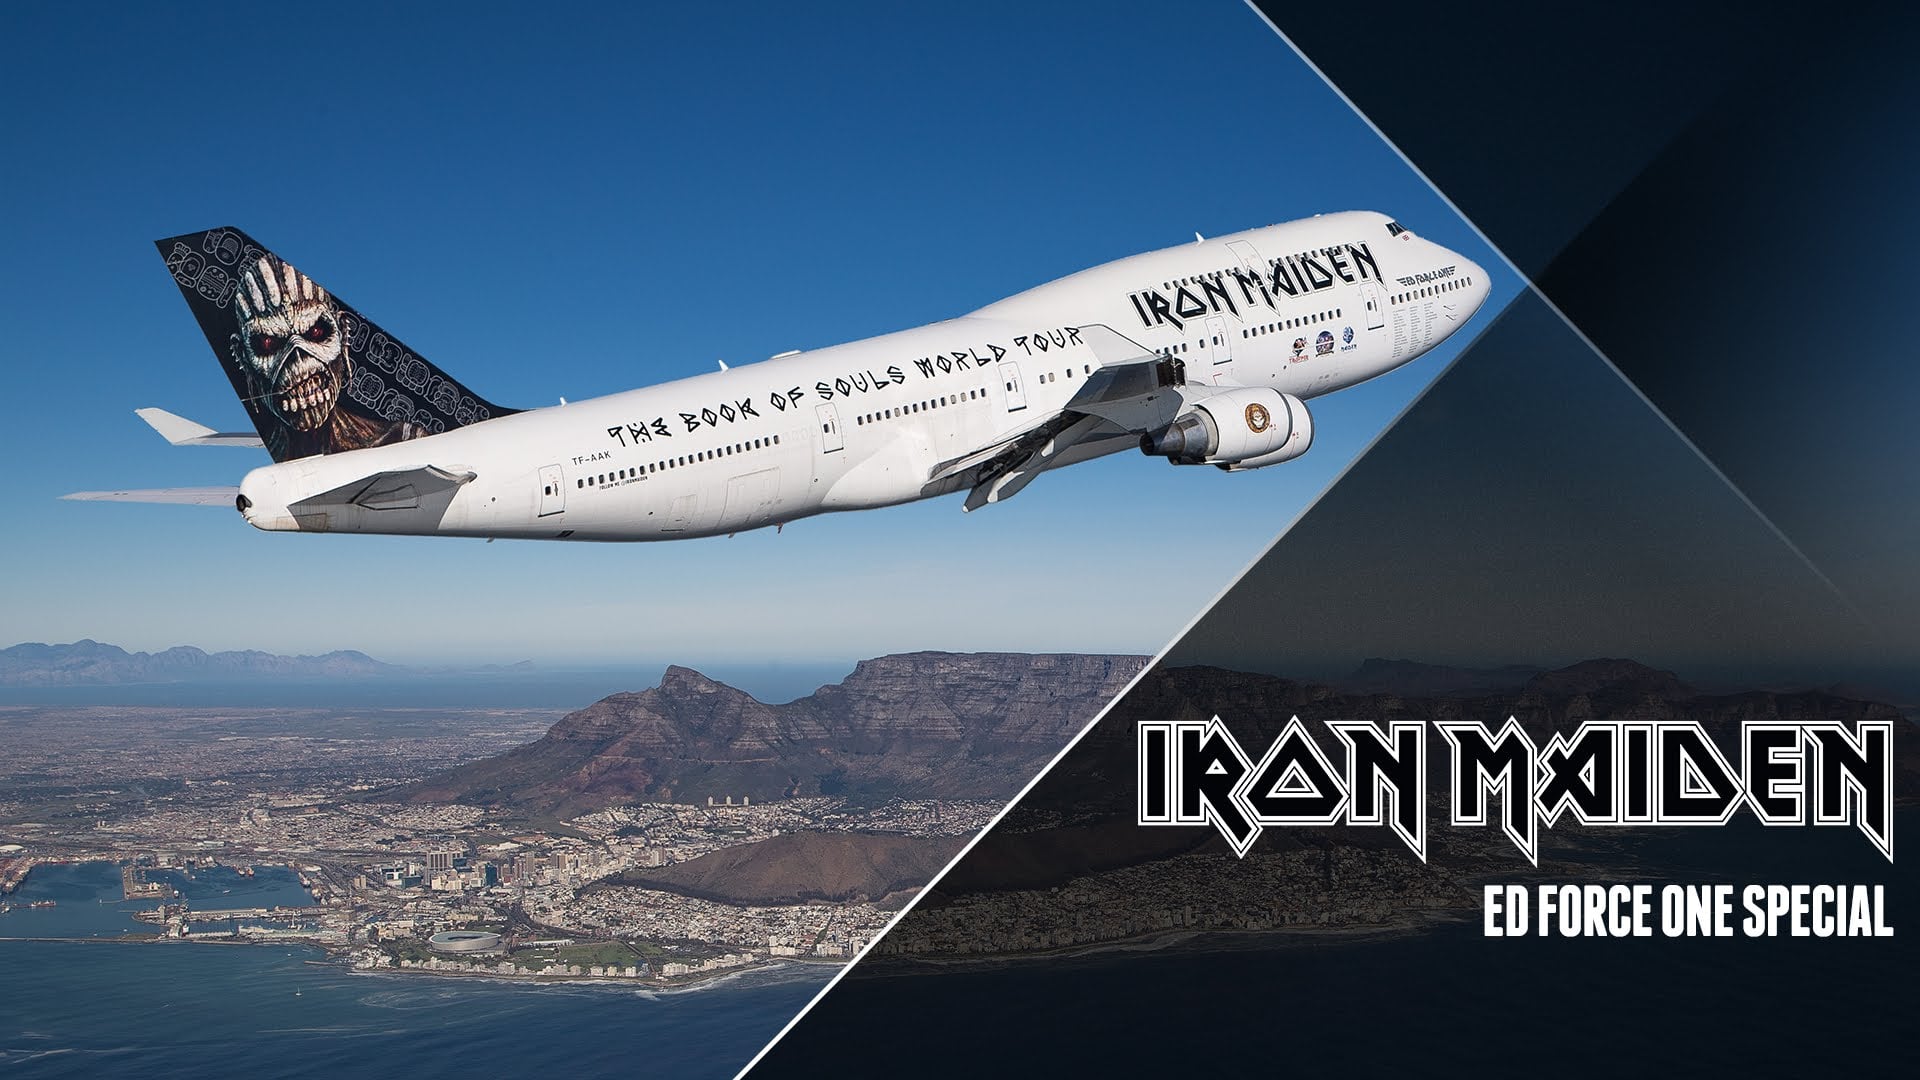 iron maiden tour 2016 airplane